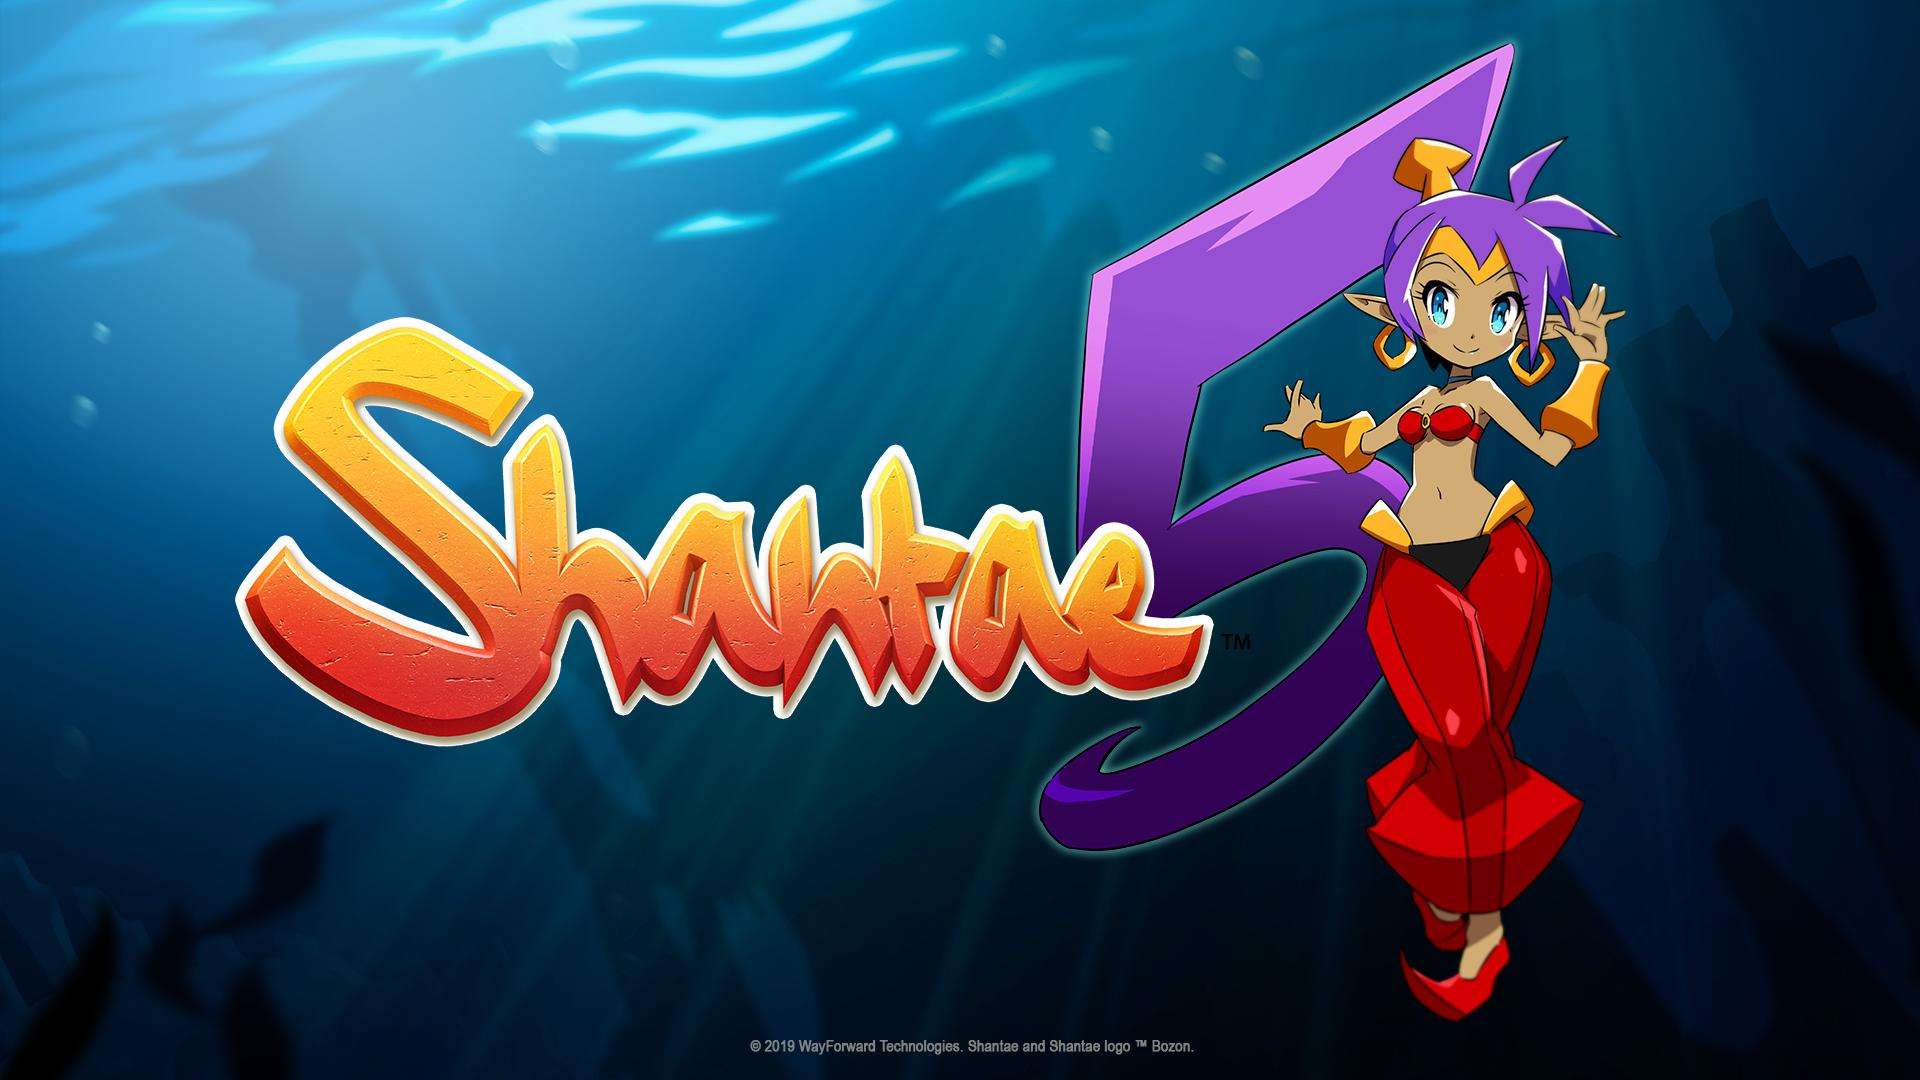 Shantae 5 muestra su cinemática de introducción